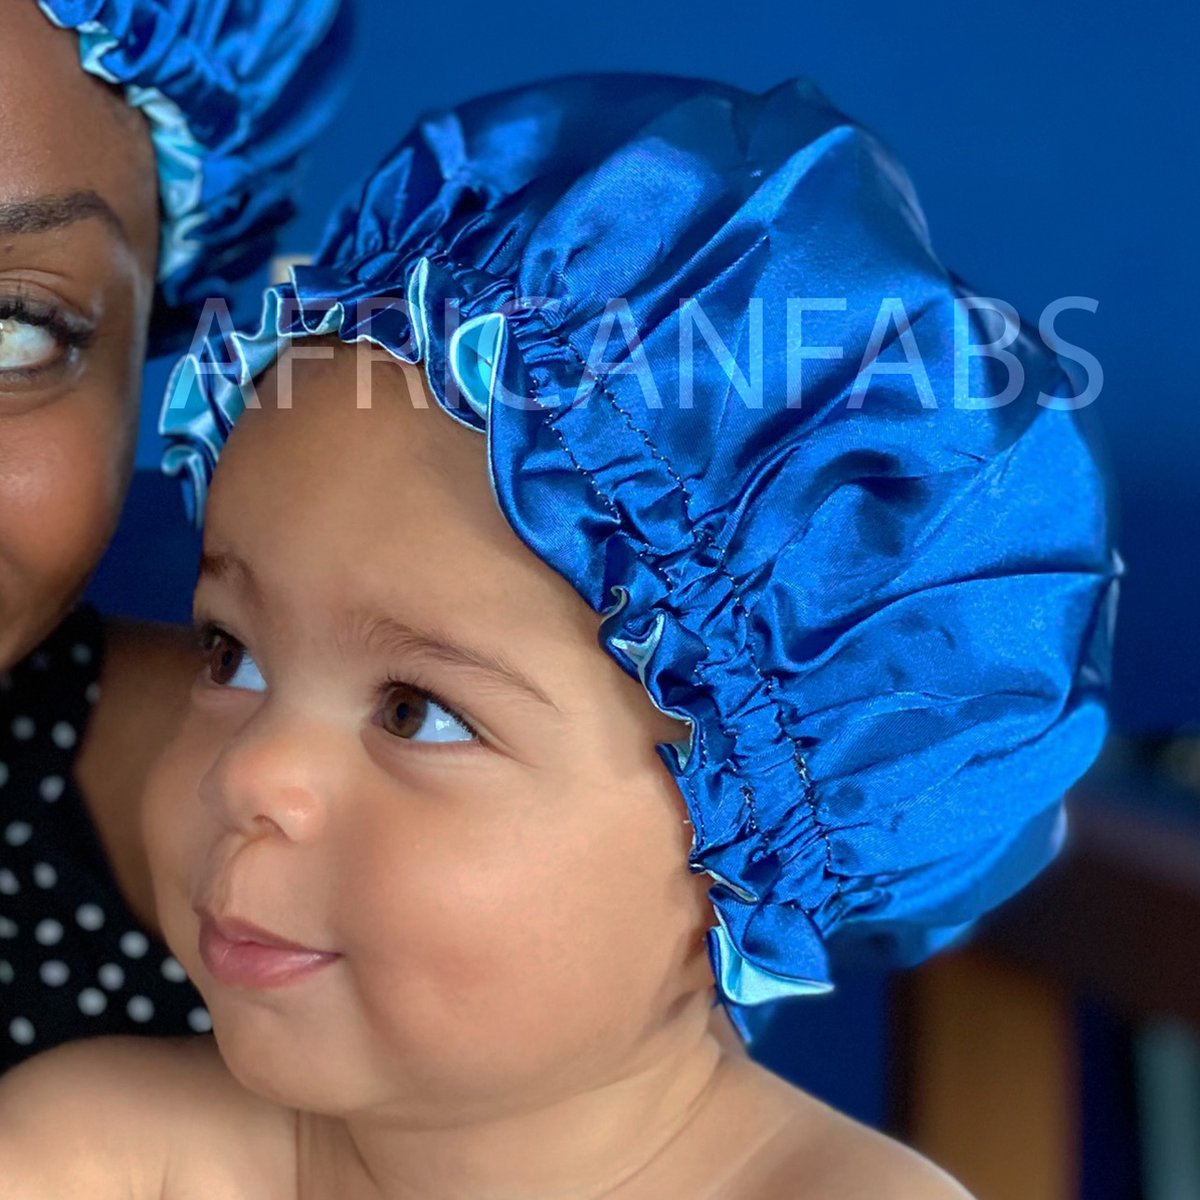 Blauwe Satijnen Slaapmuts voor Kinderen van 3-7 jaar AfricanFabs® / Kinder Hair Bonnet / Haar bonnet van Satijn / Satin bonnet